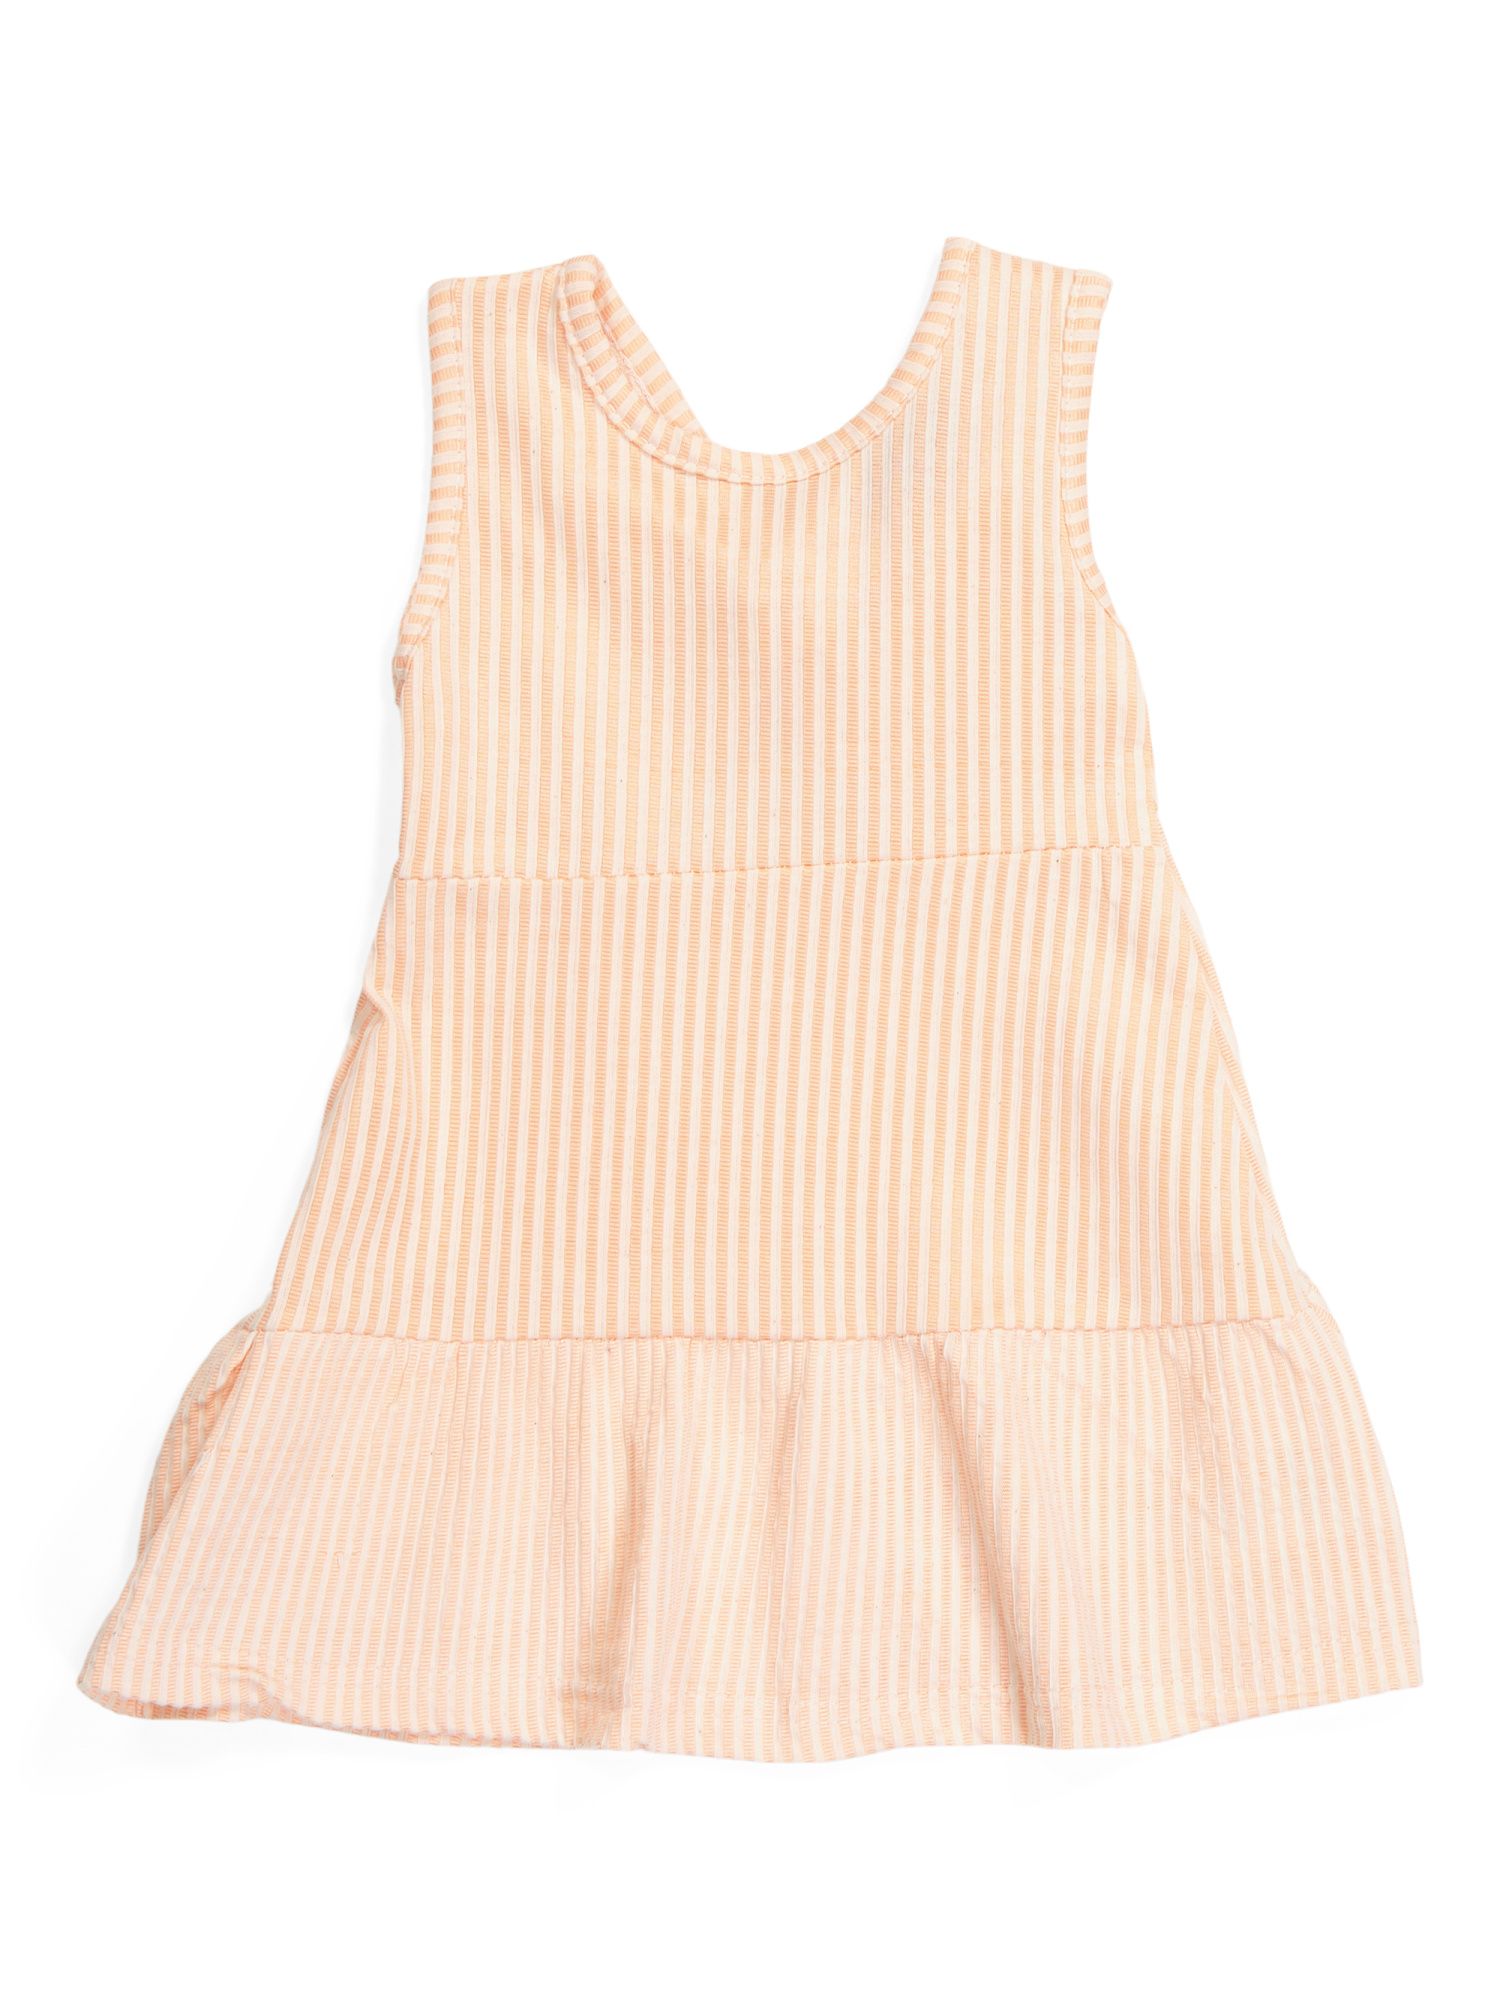 Toddler Girl Sleeveless Dress | Toddler Girl Dresses | Marshalls | Marshalls